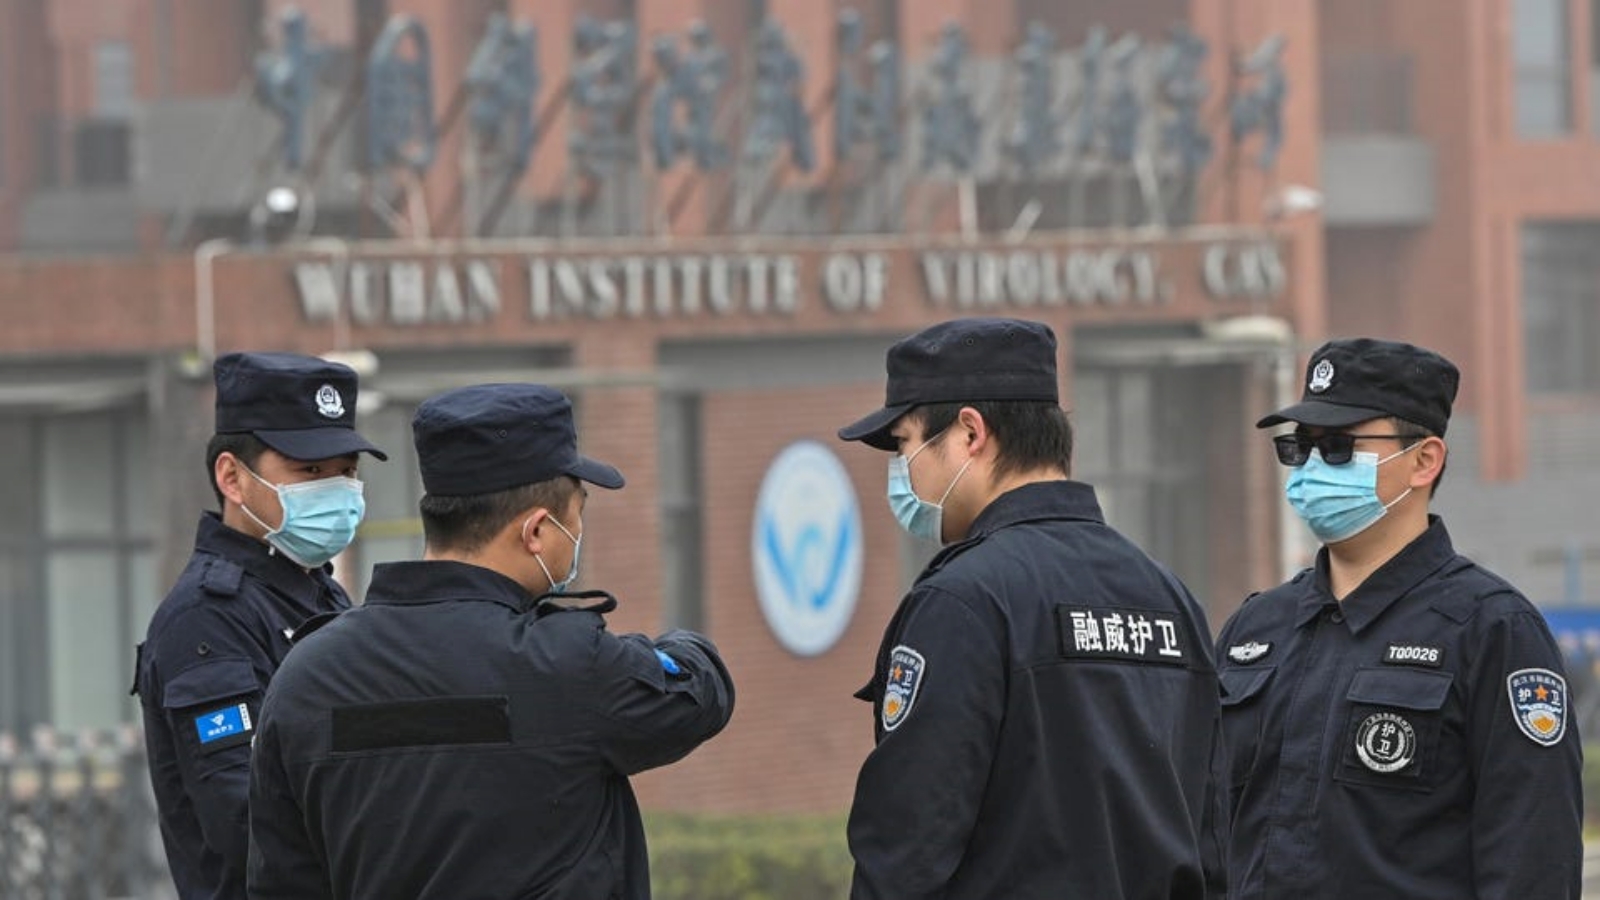 أفراد الأمن يقفون في حراسة معهد ووهان لعلم الفيروسات في الصين، بينما يقوم أعضاء فريق منظمة الصحة العالمية (WHO) بالتحقيق في أصول فيروس كورونا كوفيد-19